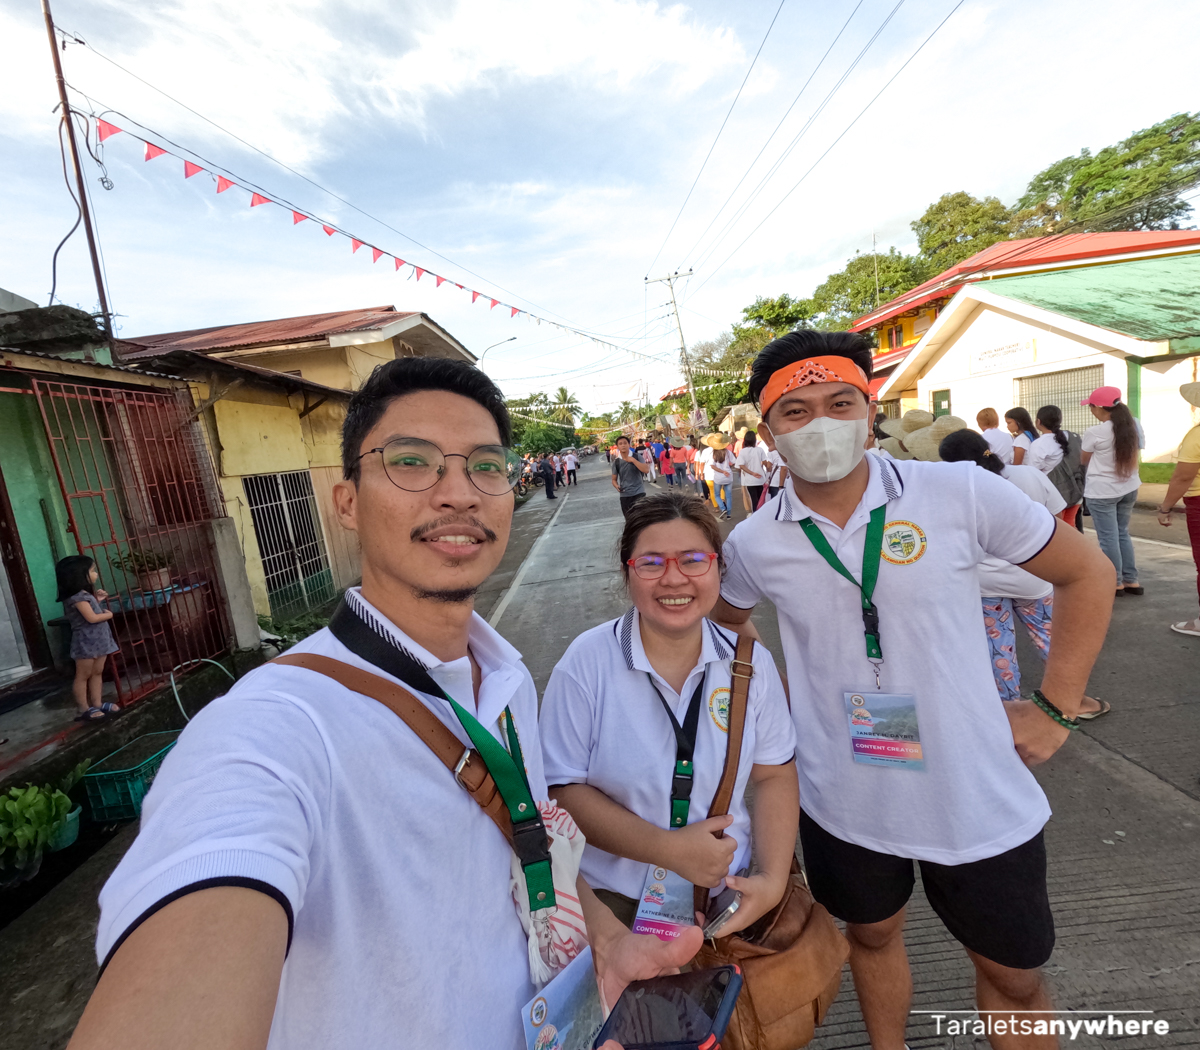 Group photo at Gapo at Palusong Festival